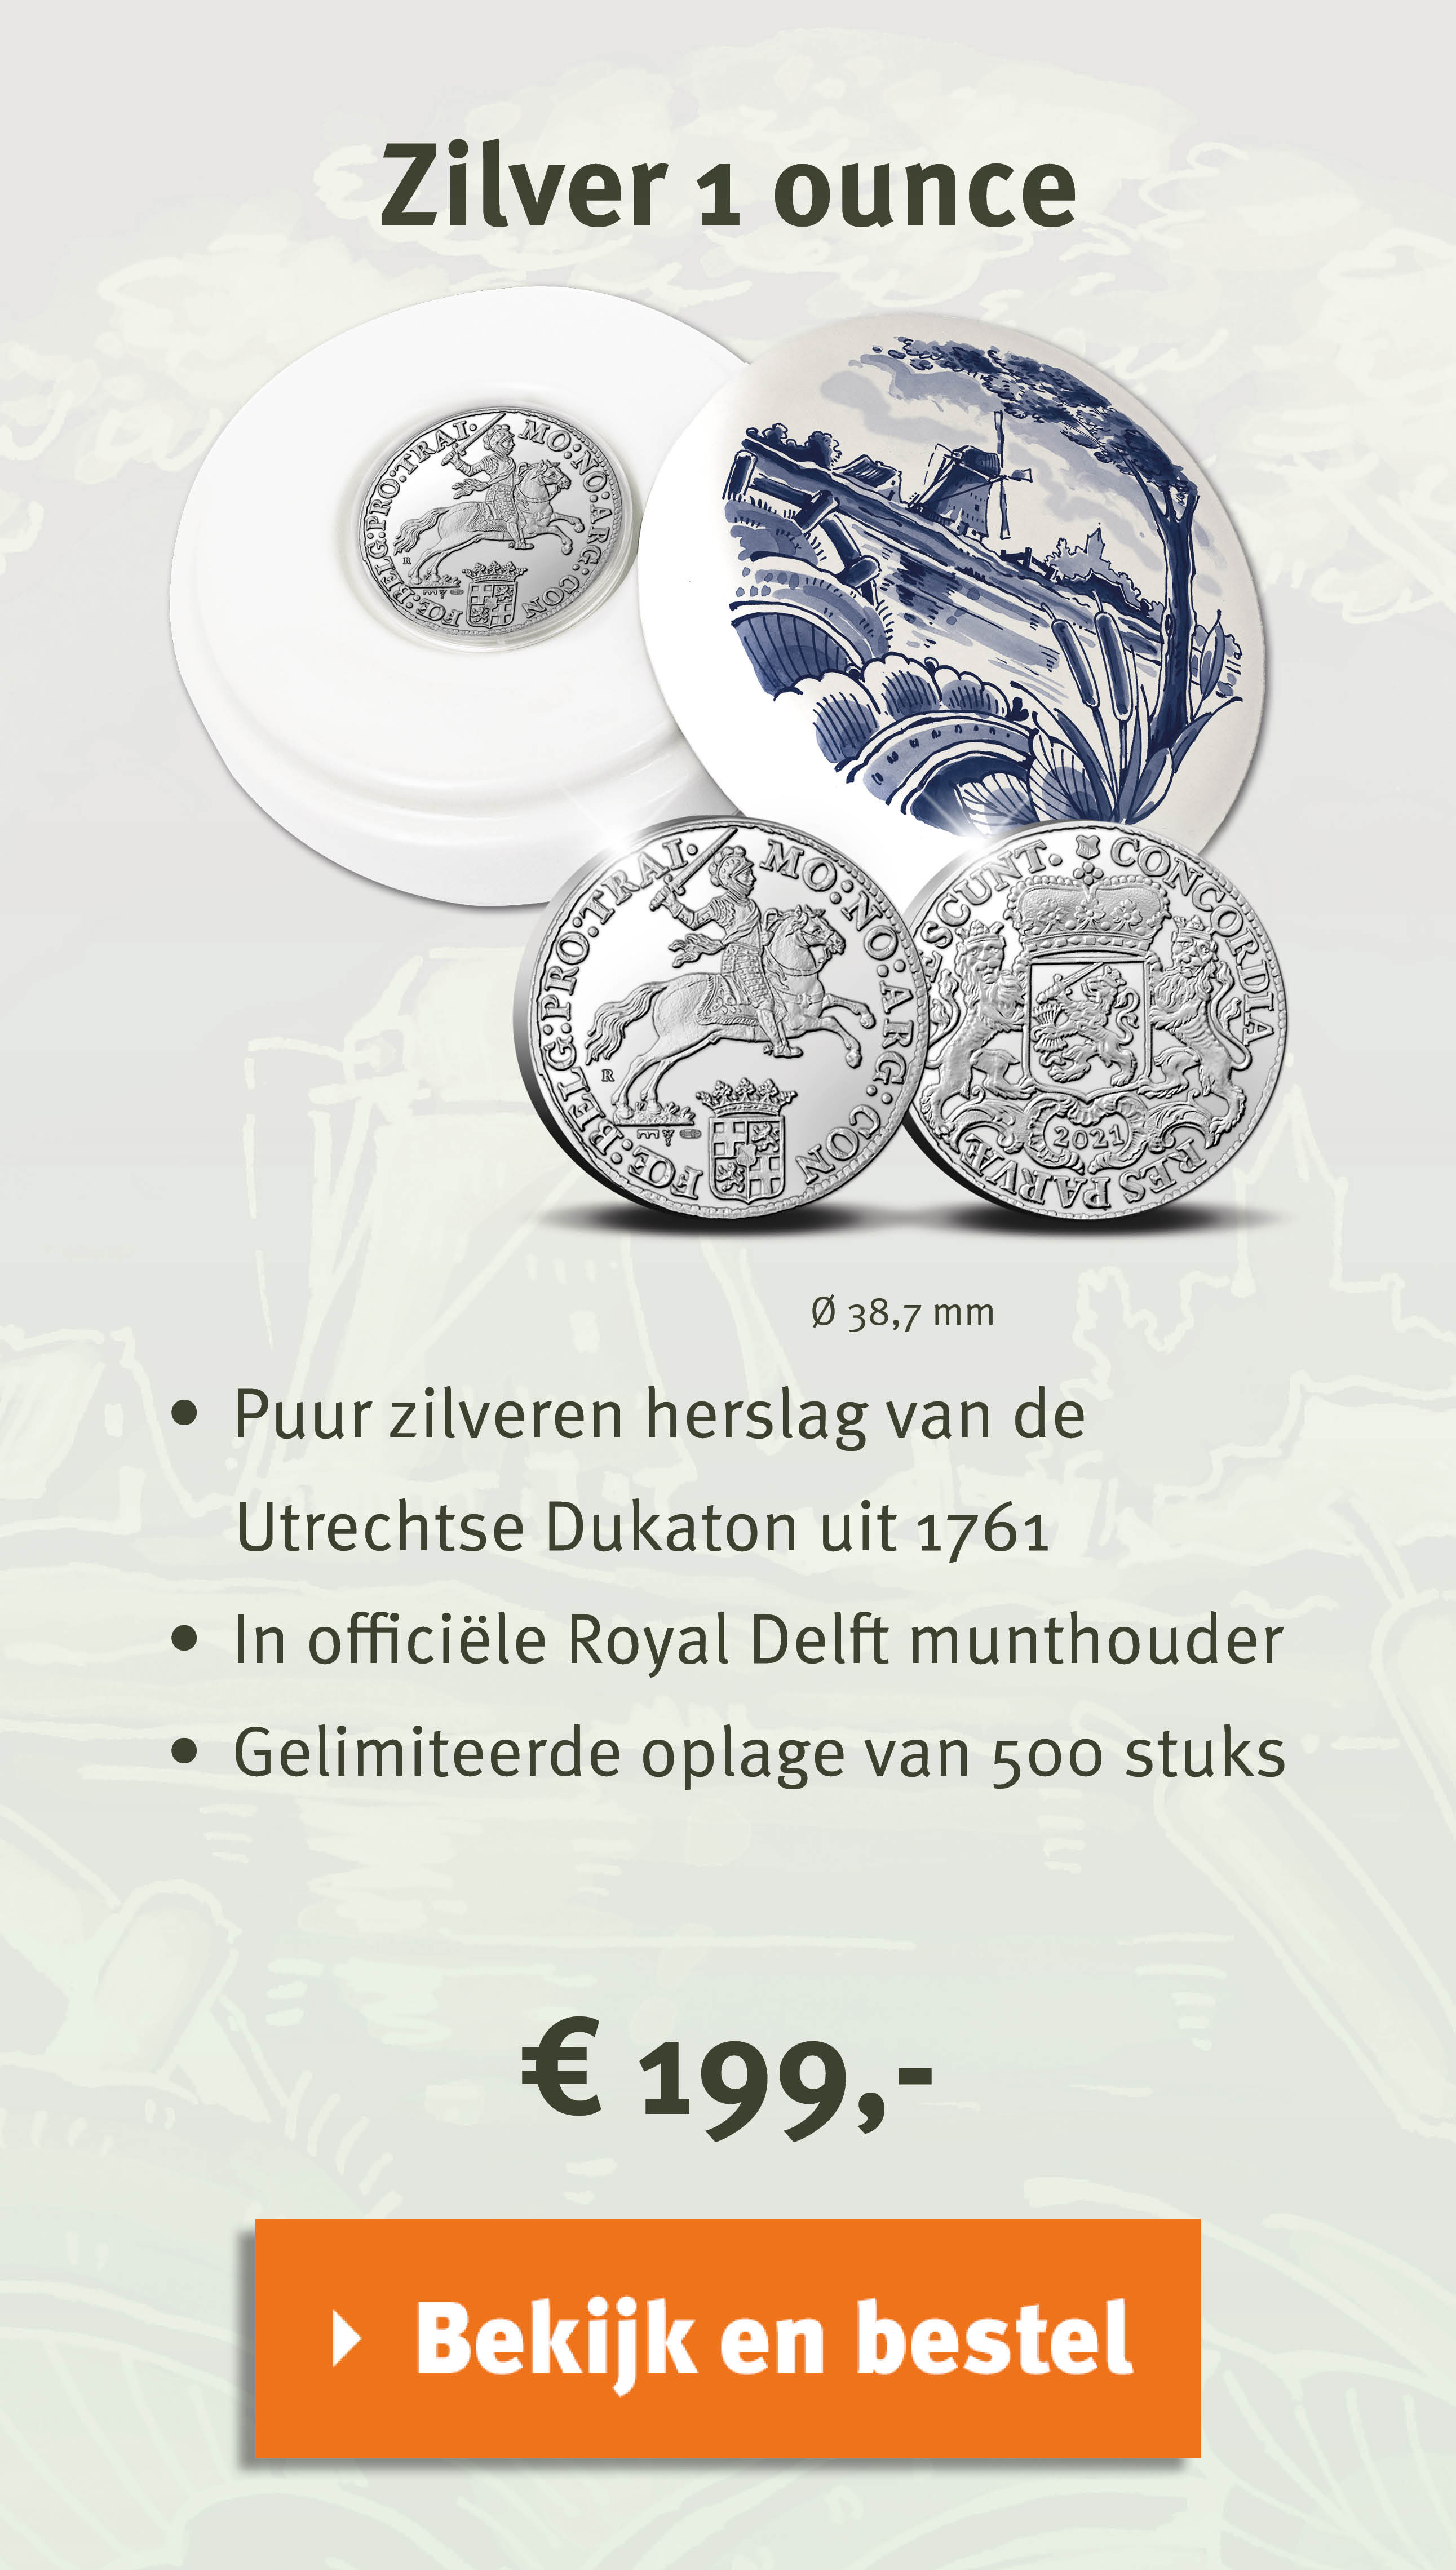 Bekijk en bestel: Officiële Herslag Dukaton 2021 ‘Zilveren Rijder’ 1 ounce - Royal Delft editie